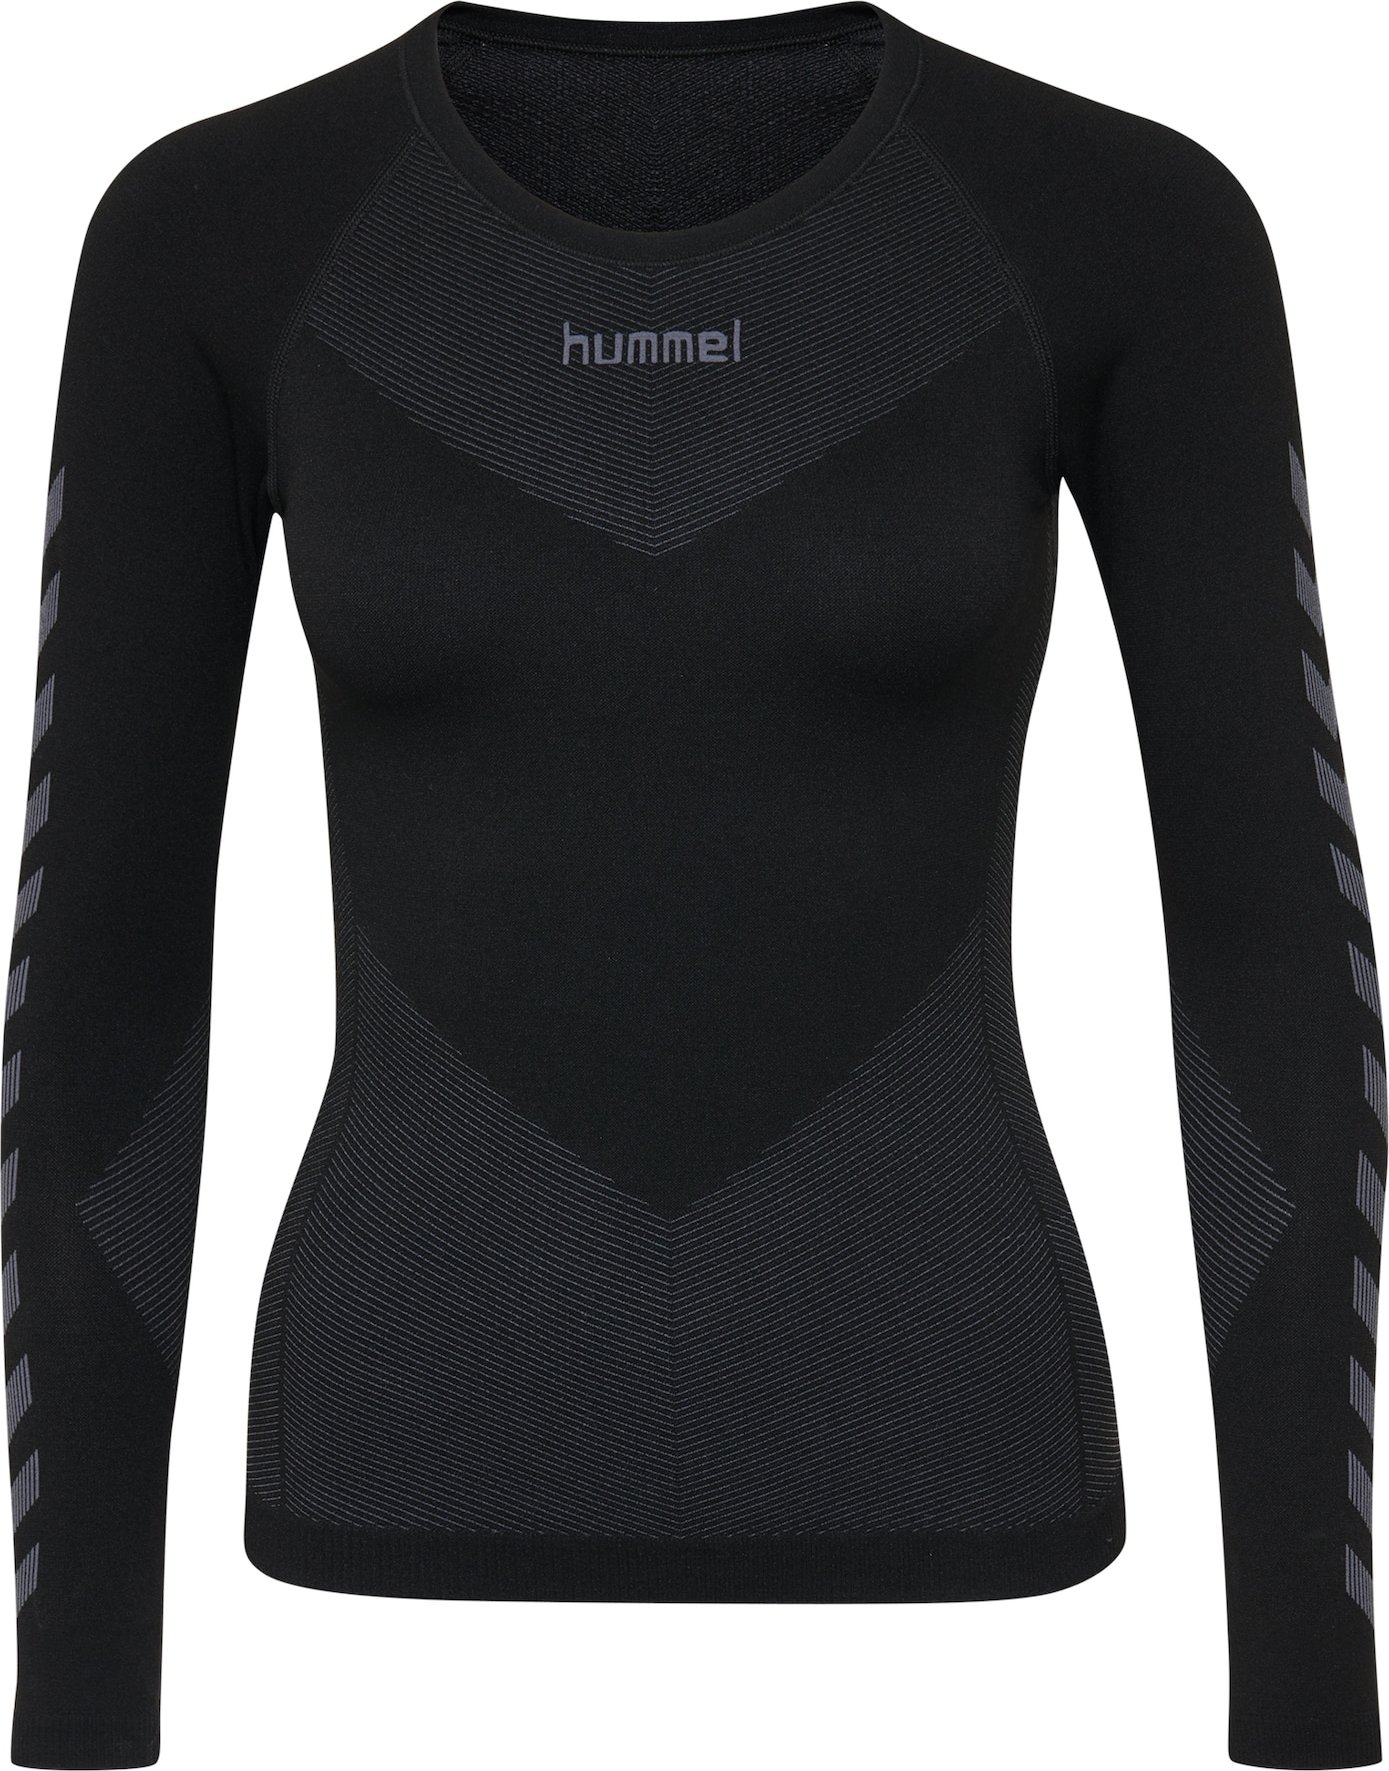 Funkční tričko Hummel čedičová šedá / černá